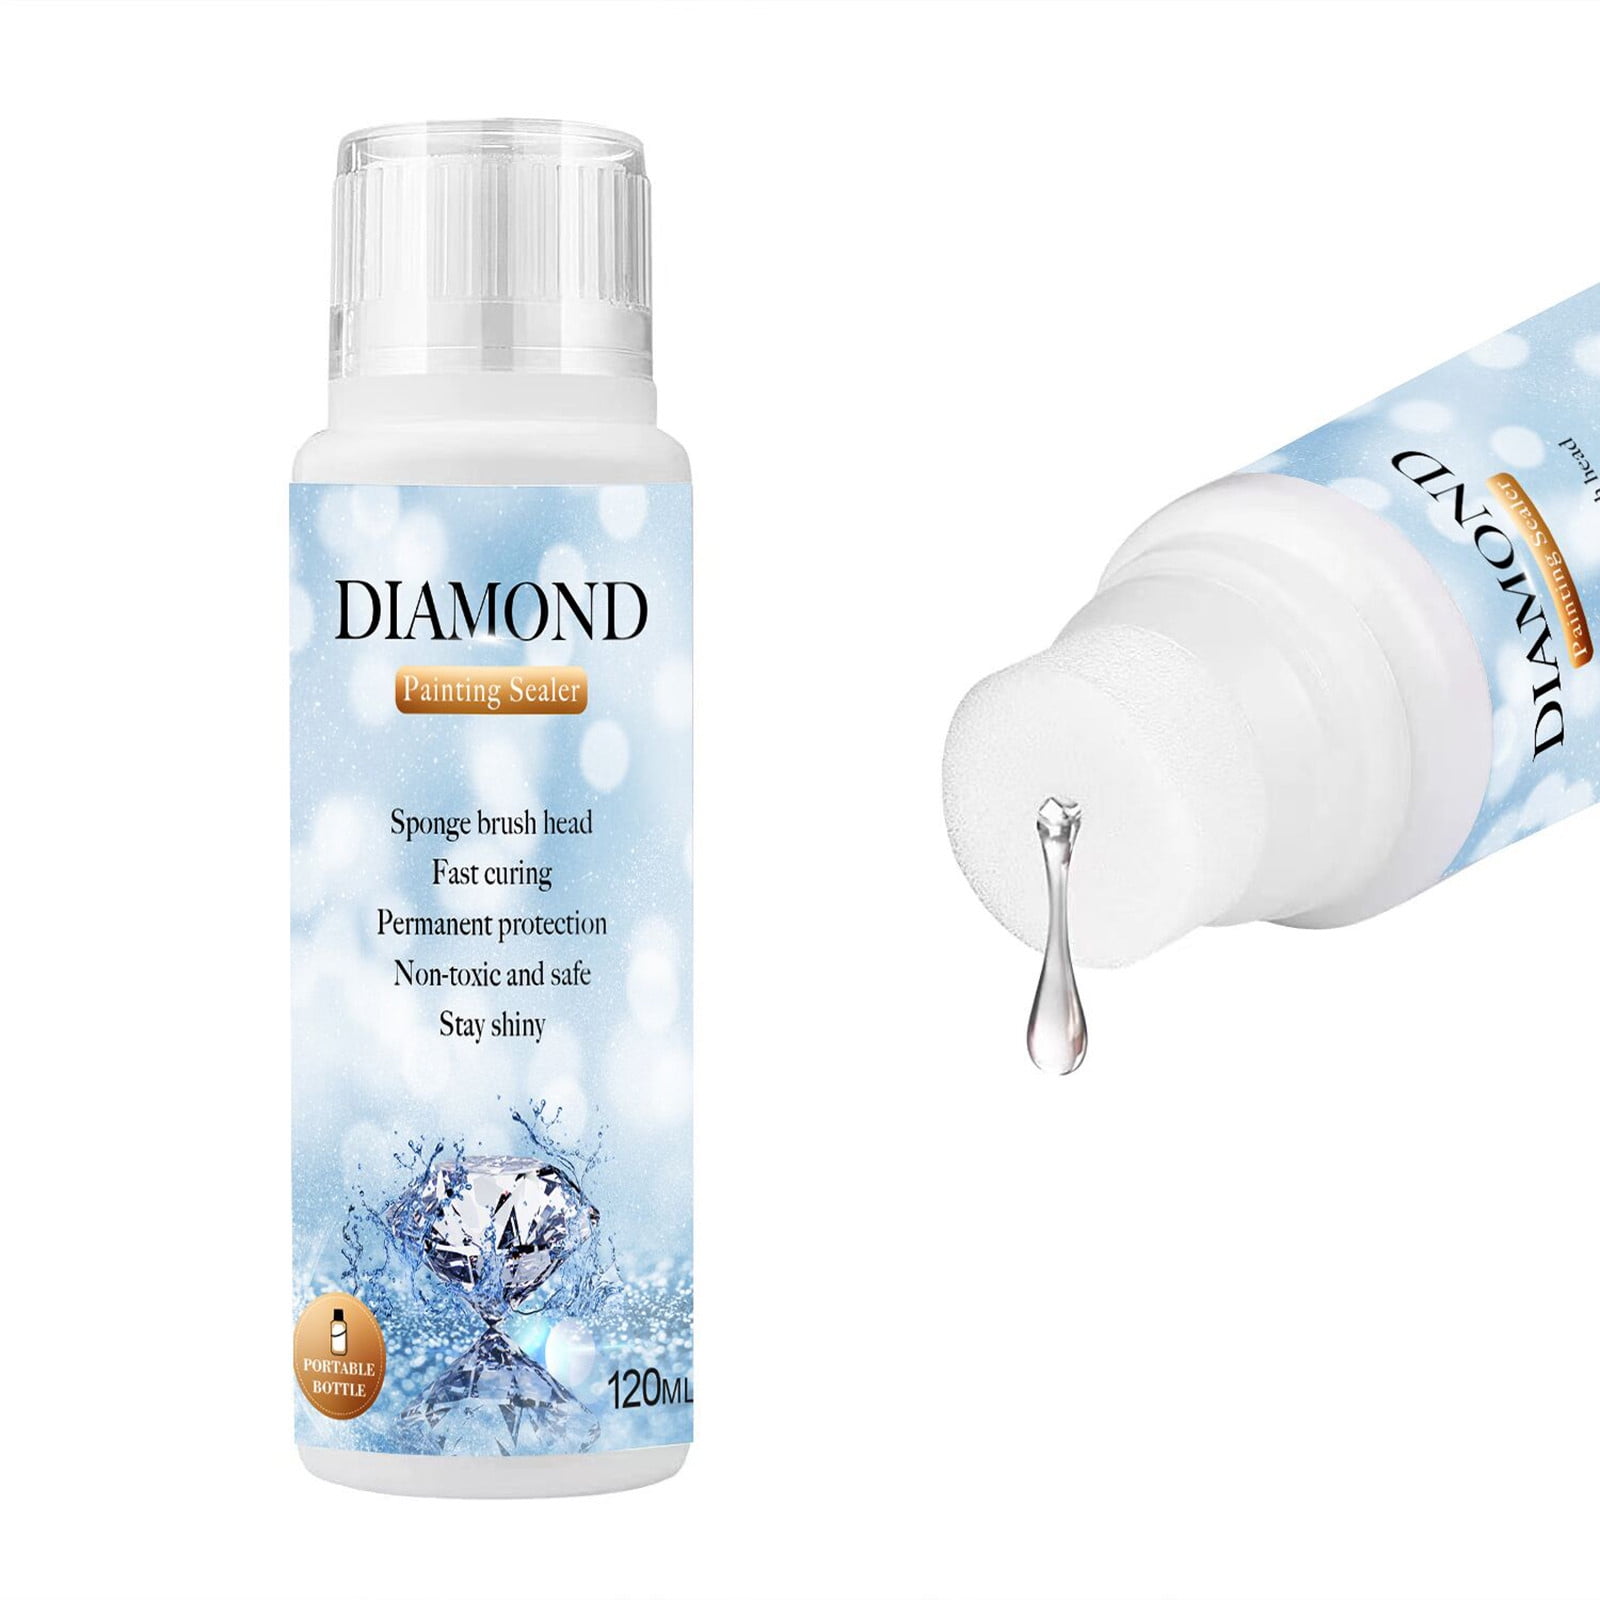 LANBEIDE Diamond Painting Sealer 120ML, 5D Diamond Painting Glue